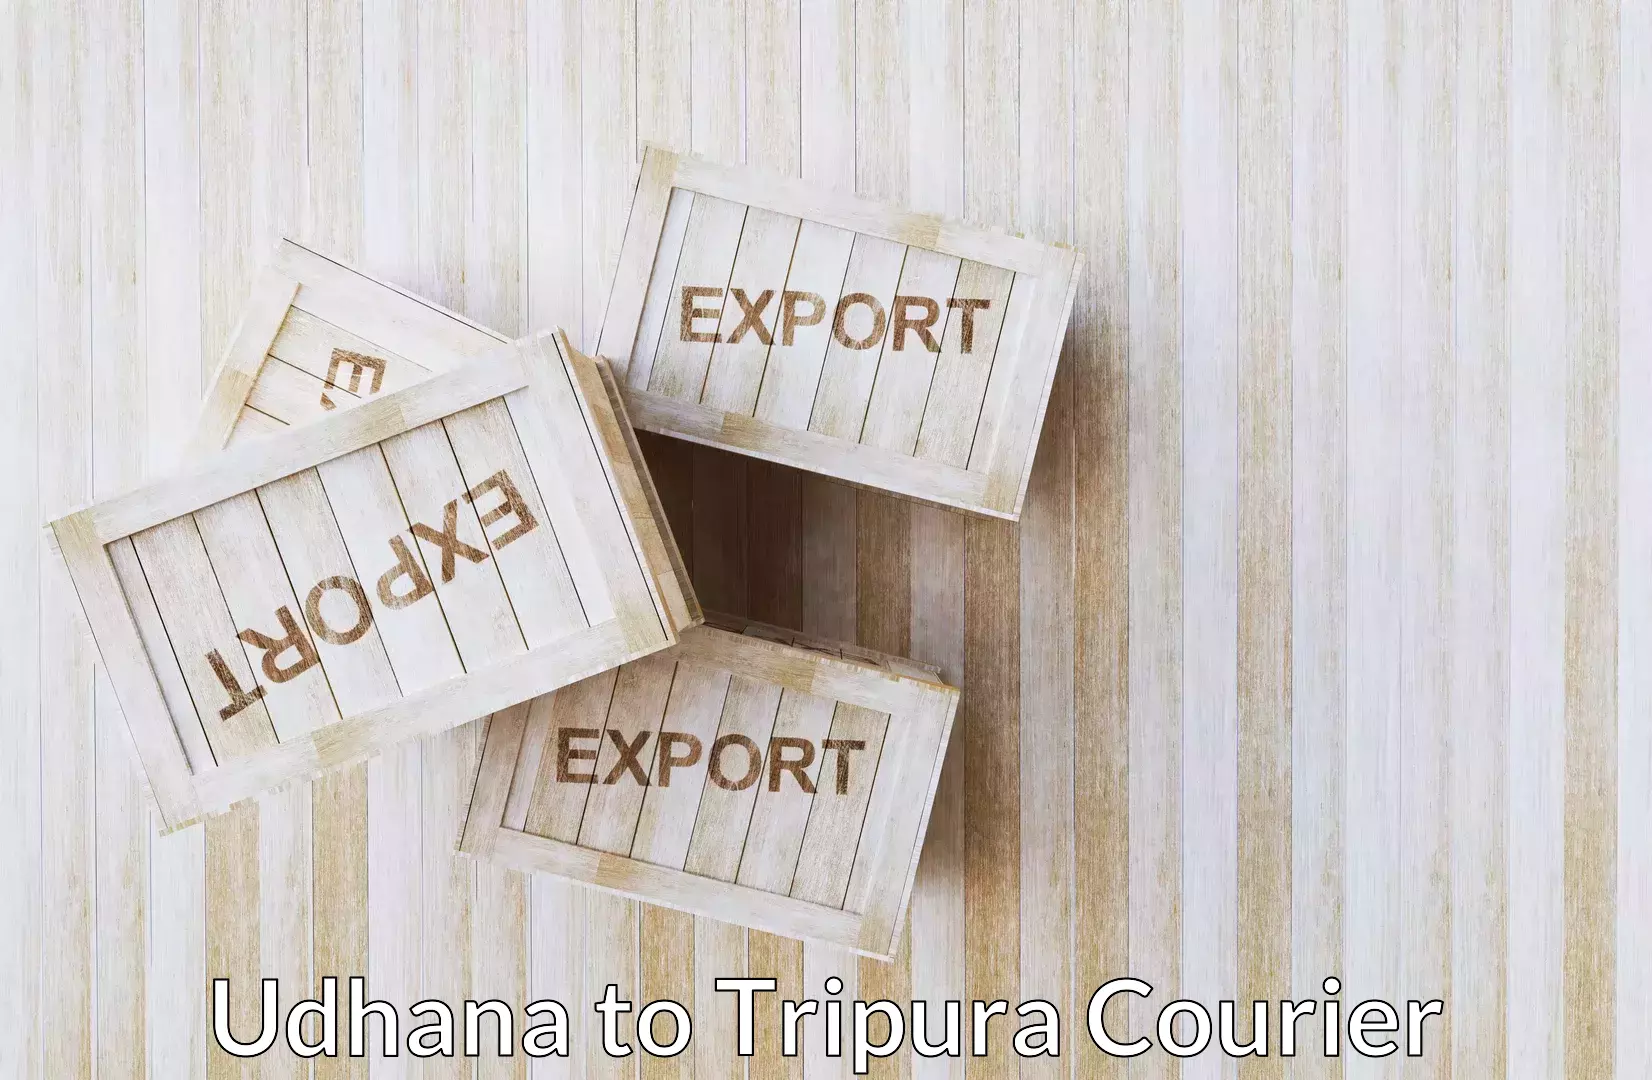 Electronic items luggage shipping Udhana to Udaipur Tripura